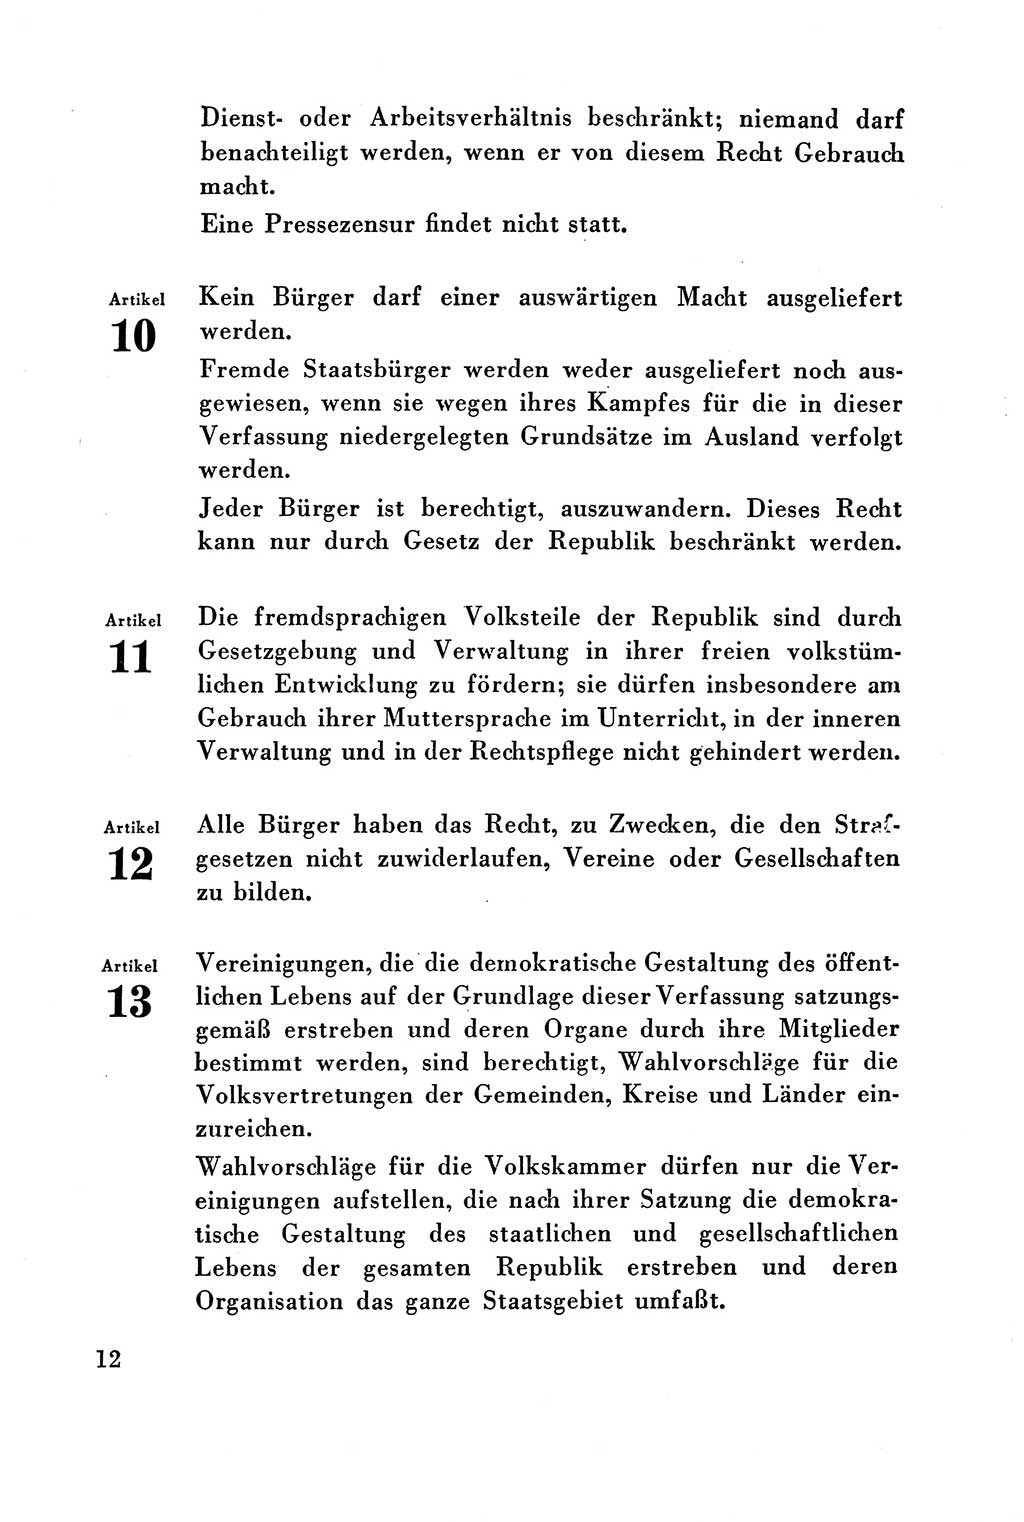 Verfassung der Deutschen Demokratischen Republik (DDR) vom 7. Oktober 1949, Seite 12 (Verf. DDR 1949, S. 12)